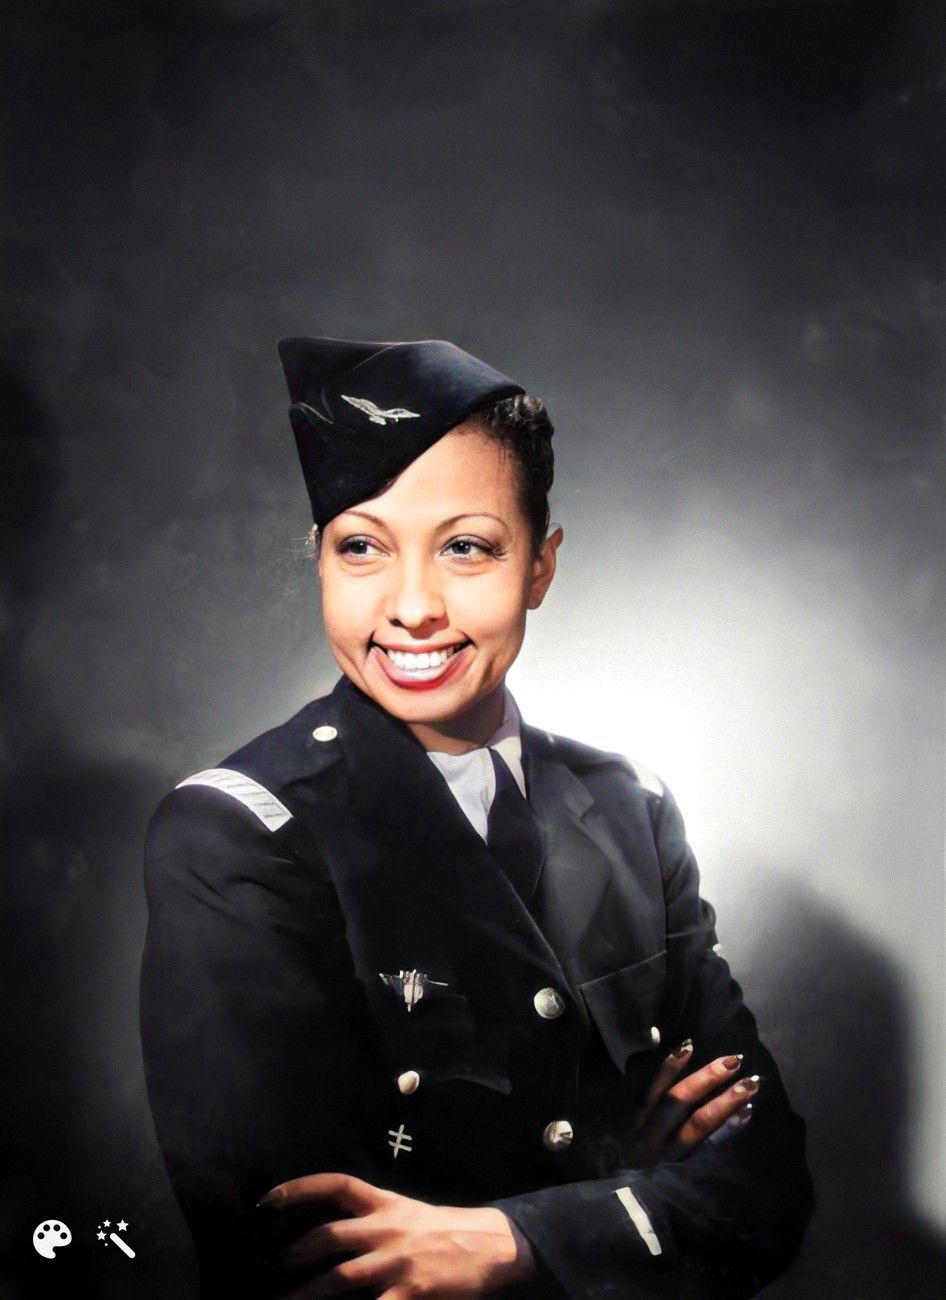 Josephine Baker in haar militaire uniform. Foto ingekleurd met MyHeritage foto tools. Originele foto door Studio Harcourt.